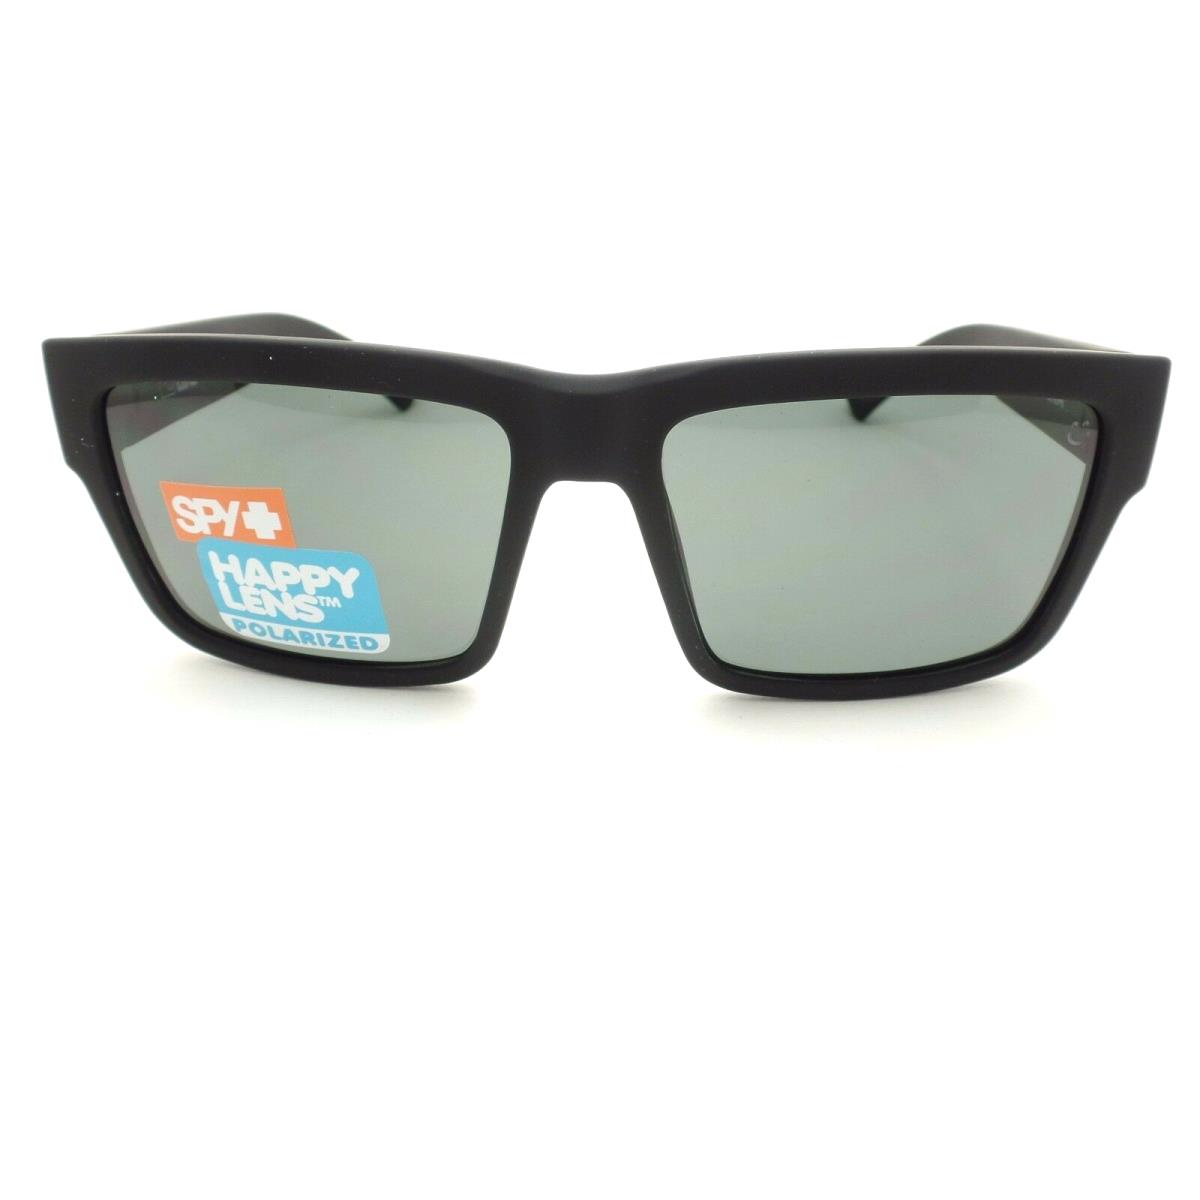 SPY Optics sunglasses Montana - Frame: Black, Lens: Gray 0